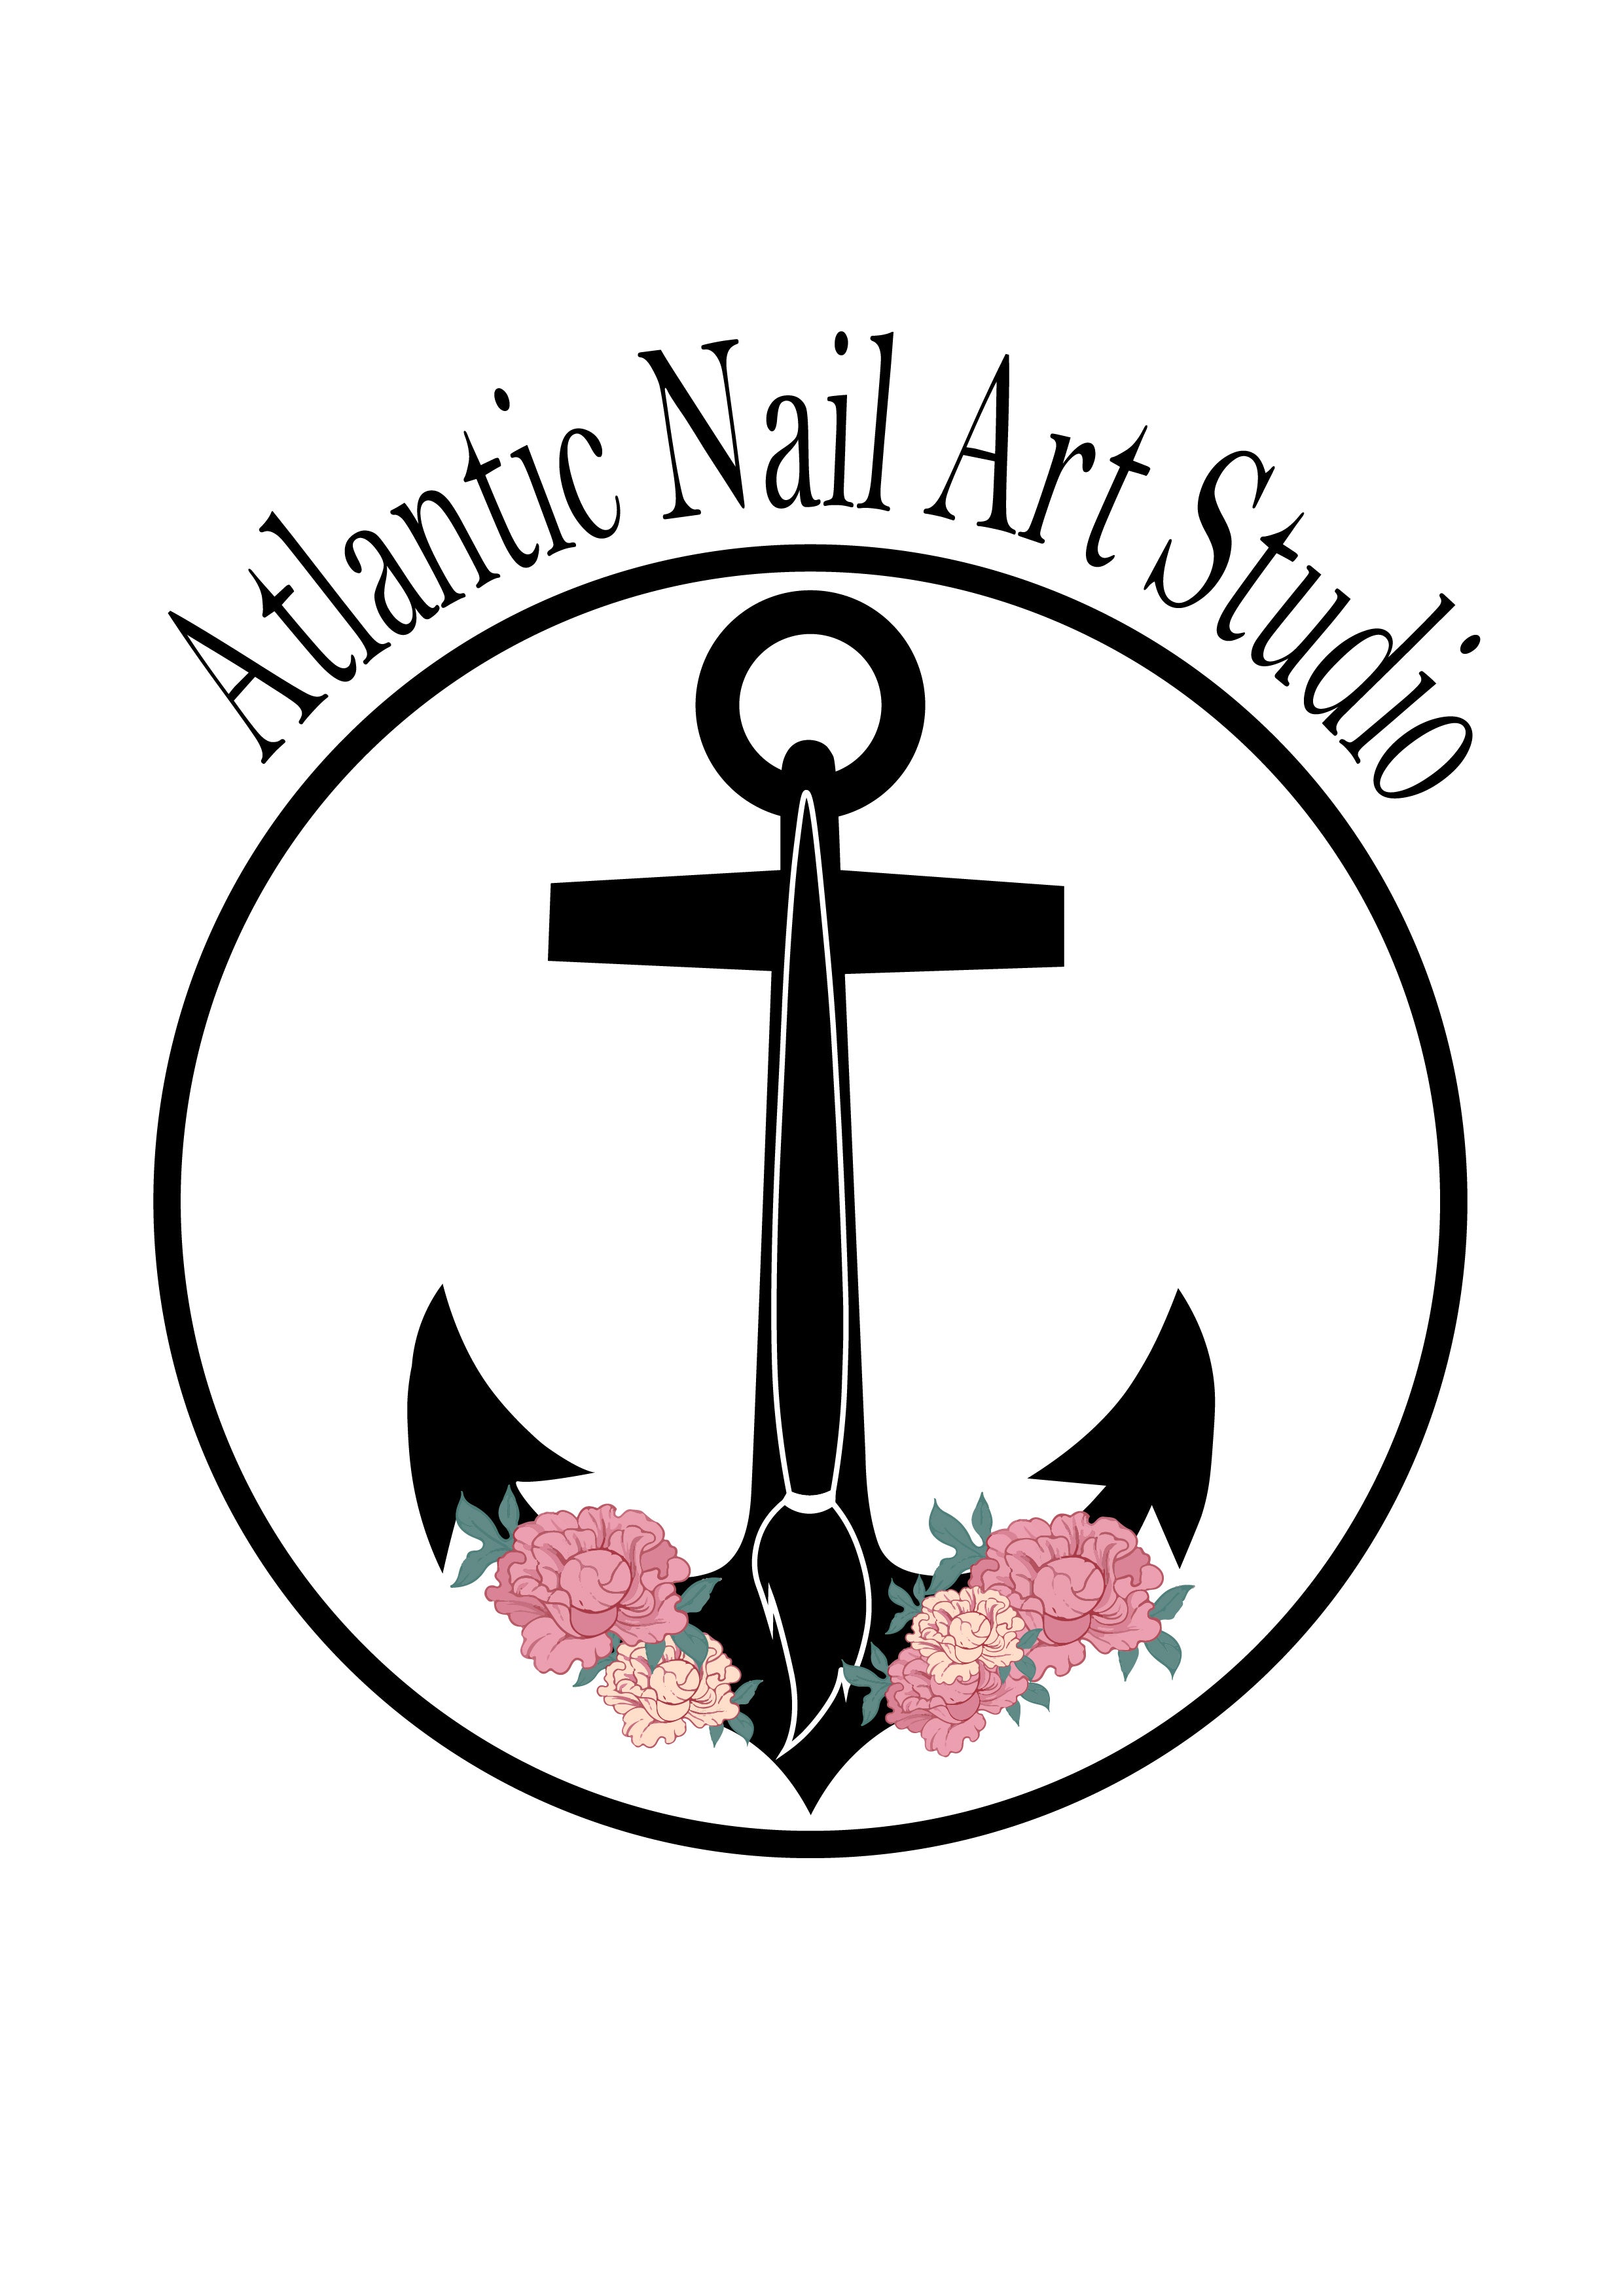 Atlantic Nail Art Studio